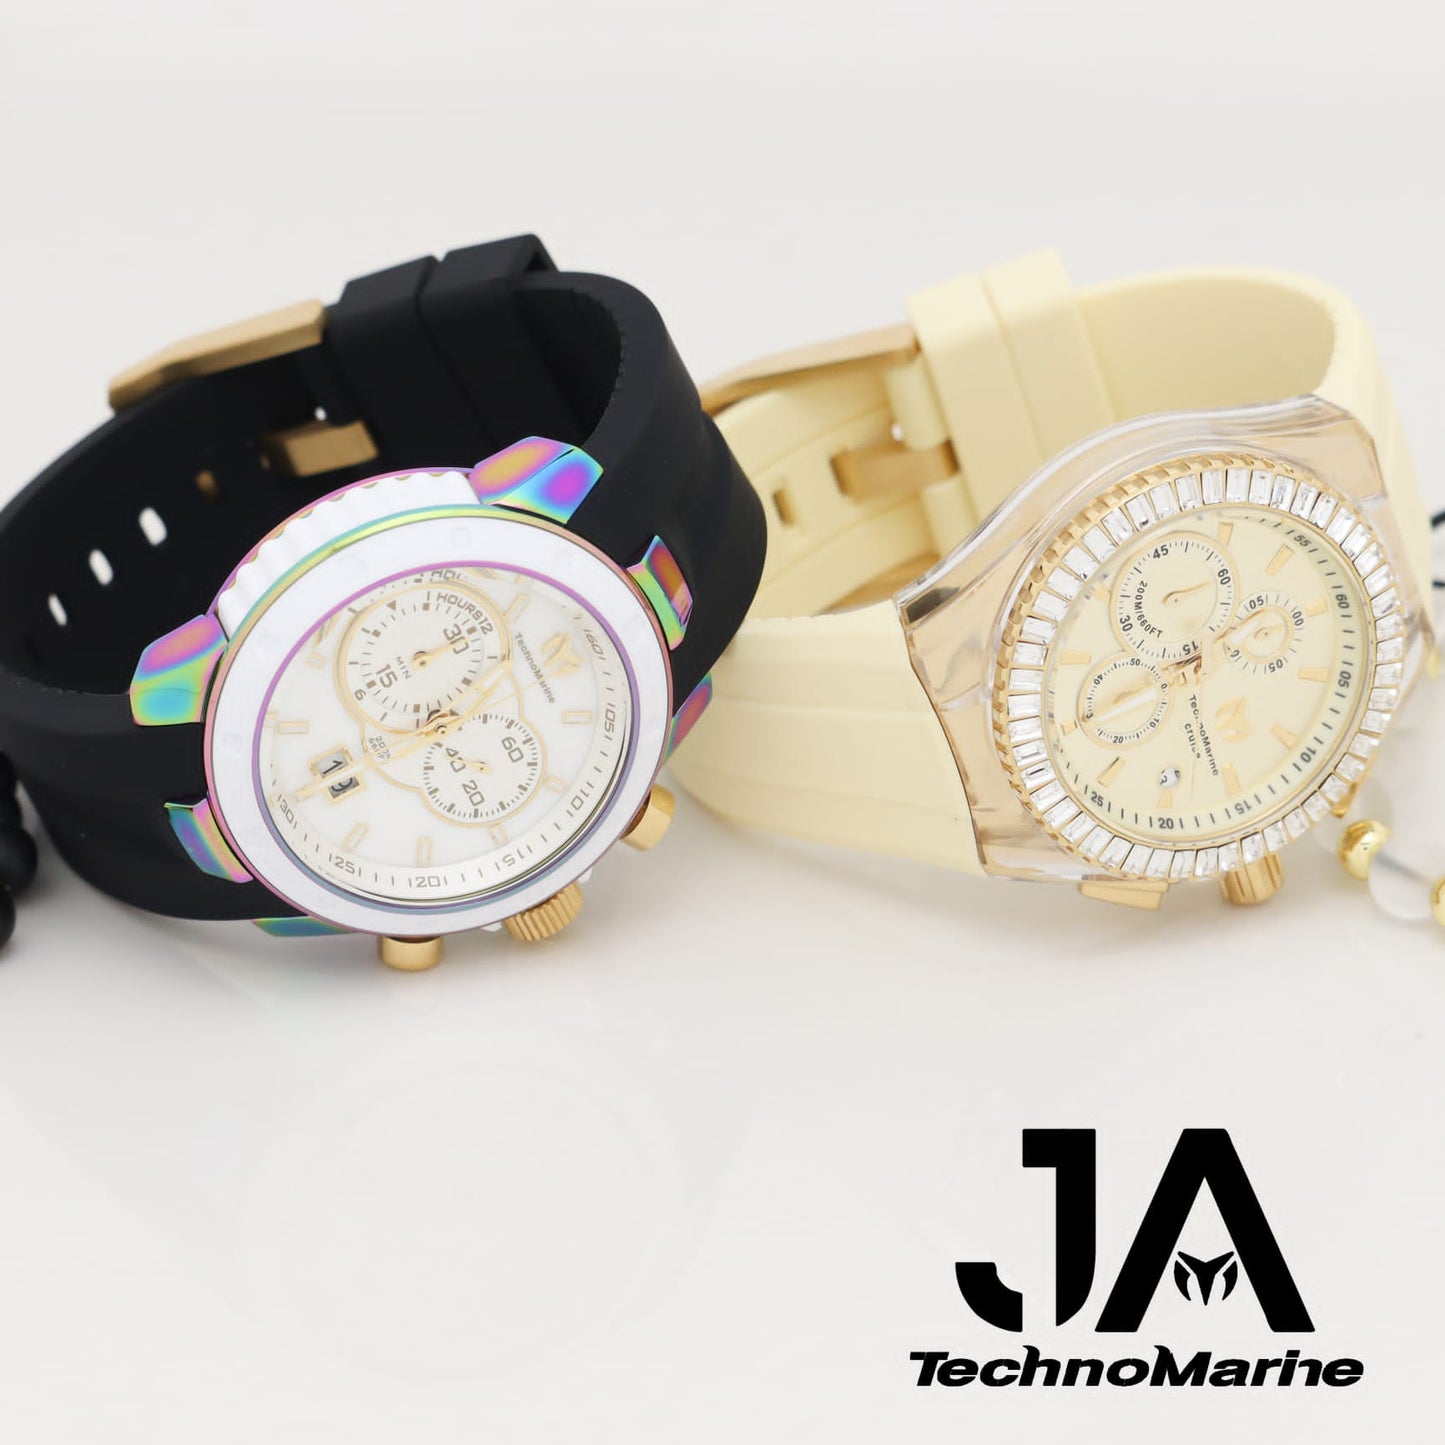 Technomarine UF6 Chronograph Quartz White Dial Men's Watch 45 mm And  TechnoMarine Cruise Men's Watch - 45mm, Beige